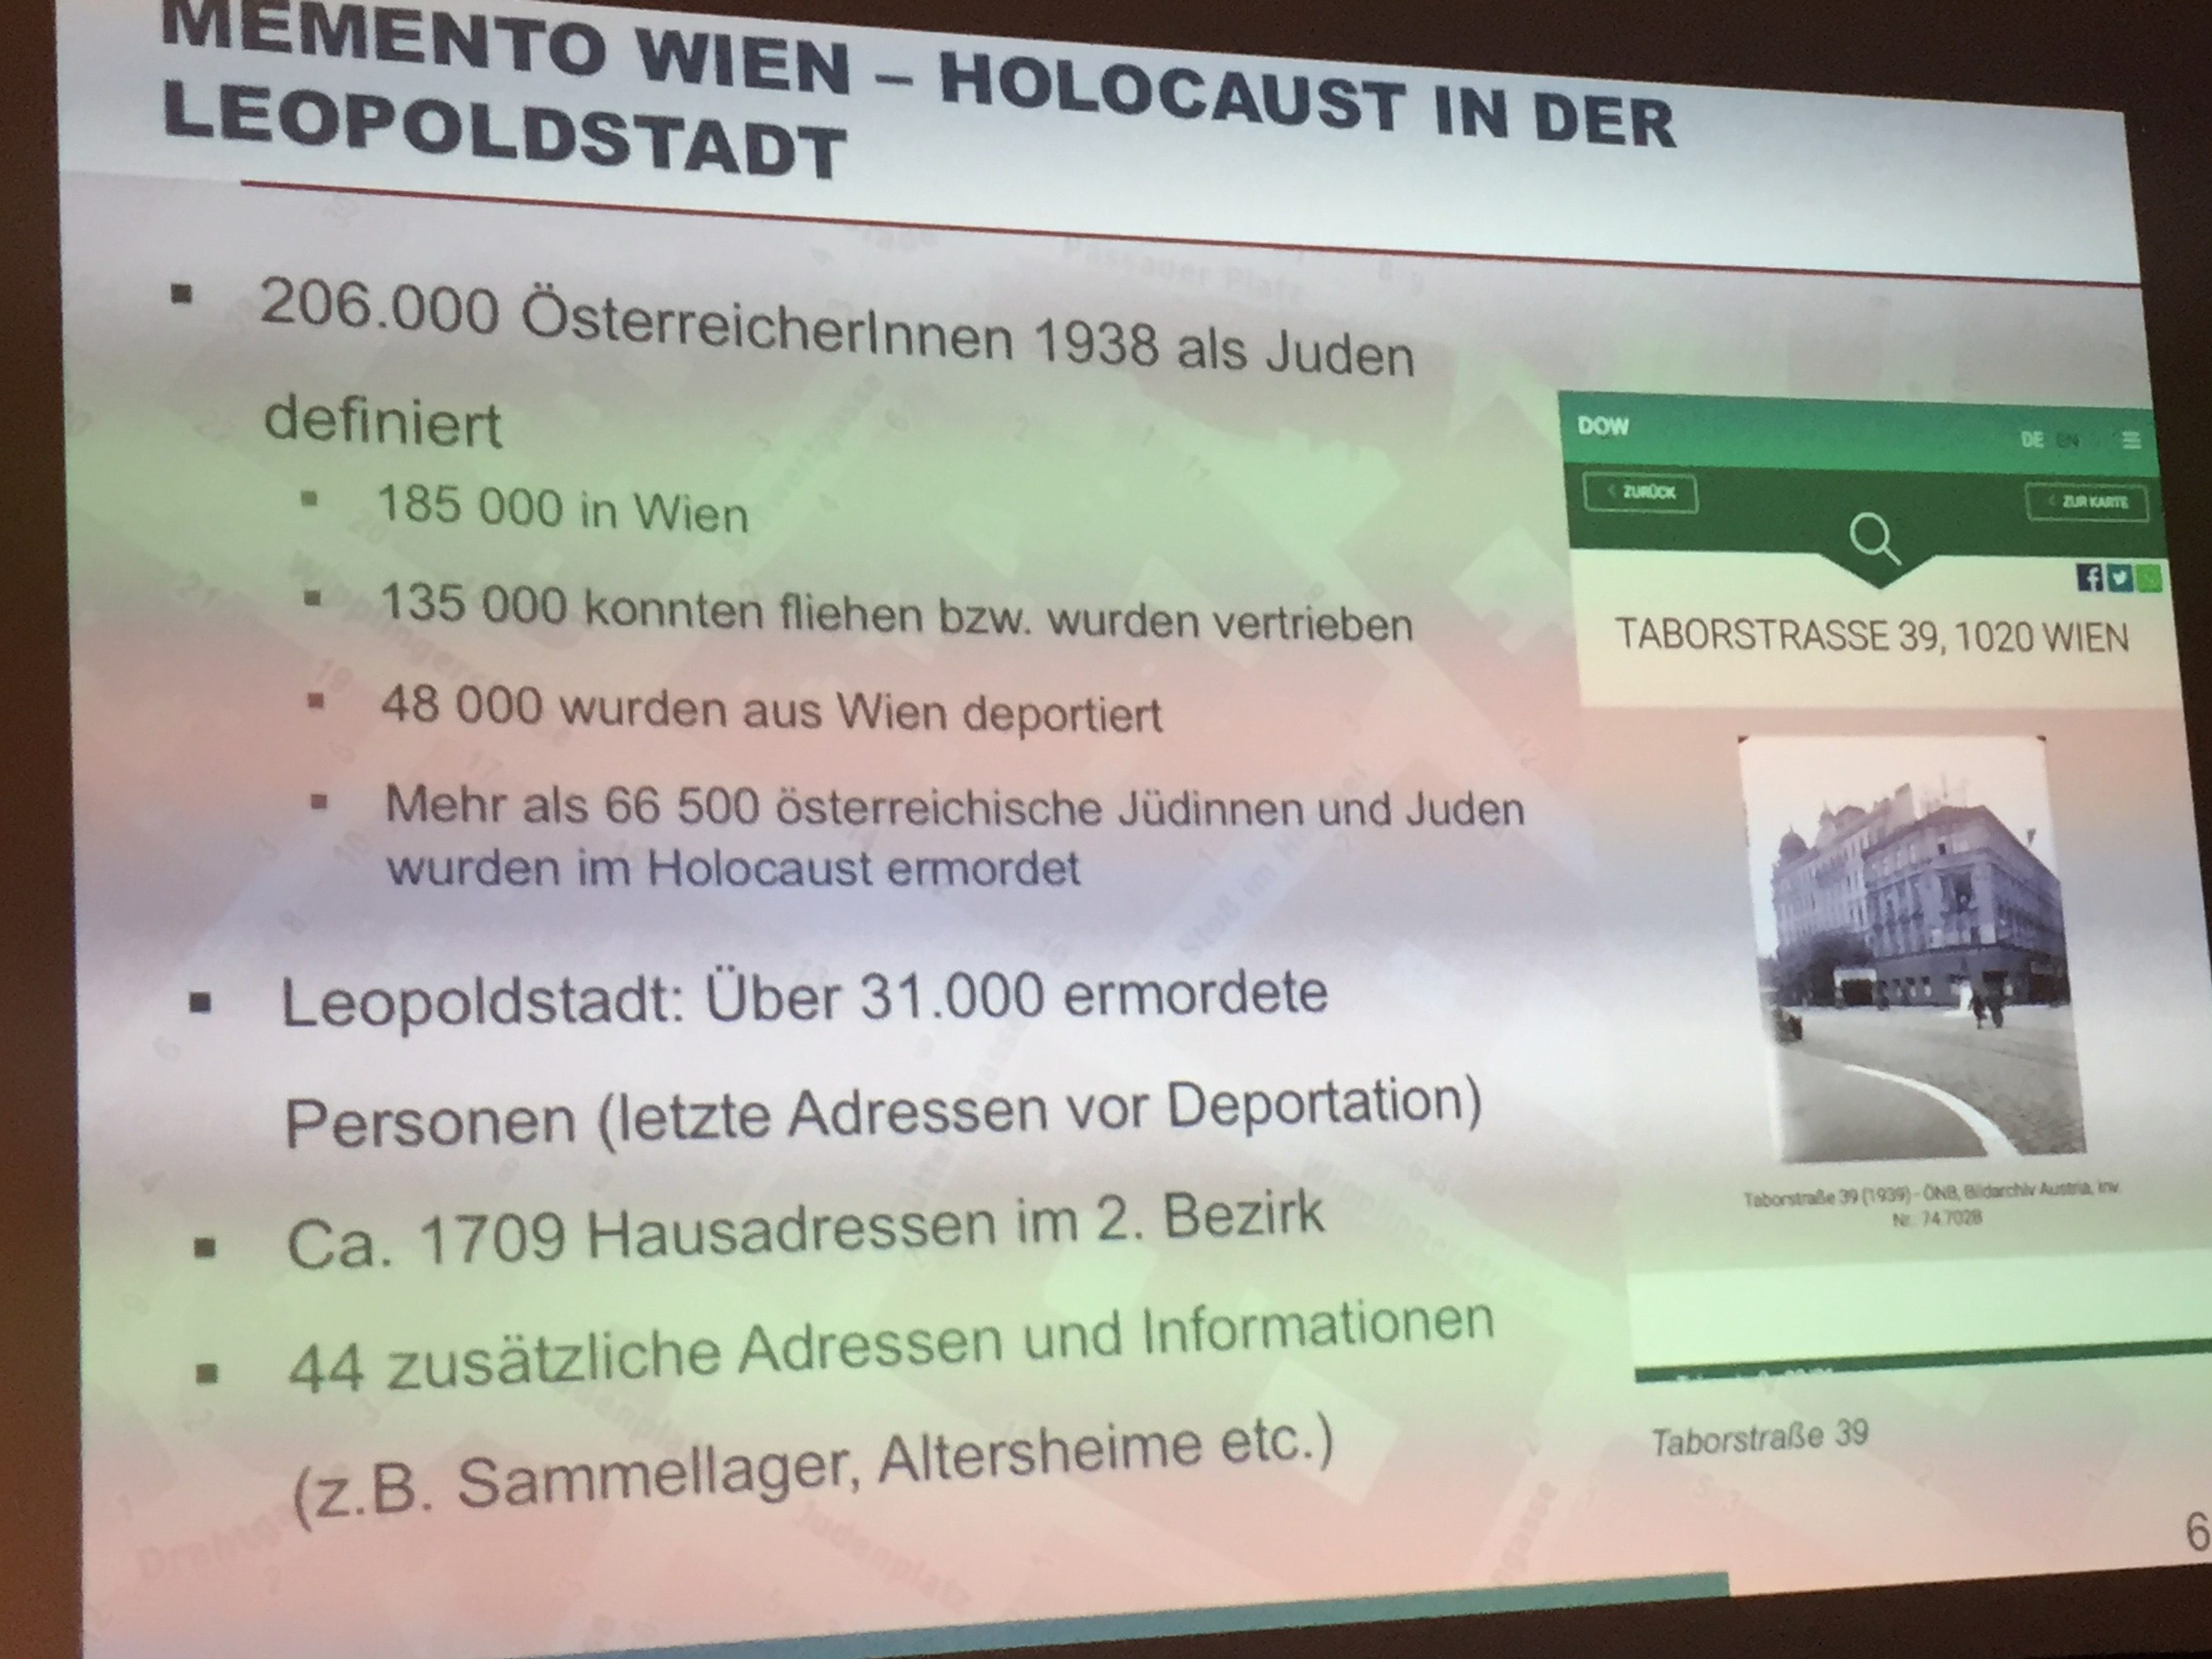 Memento Wien: Der Holocaust in der Leopoldstadt